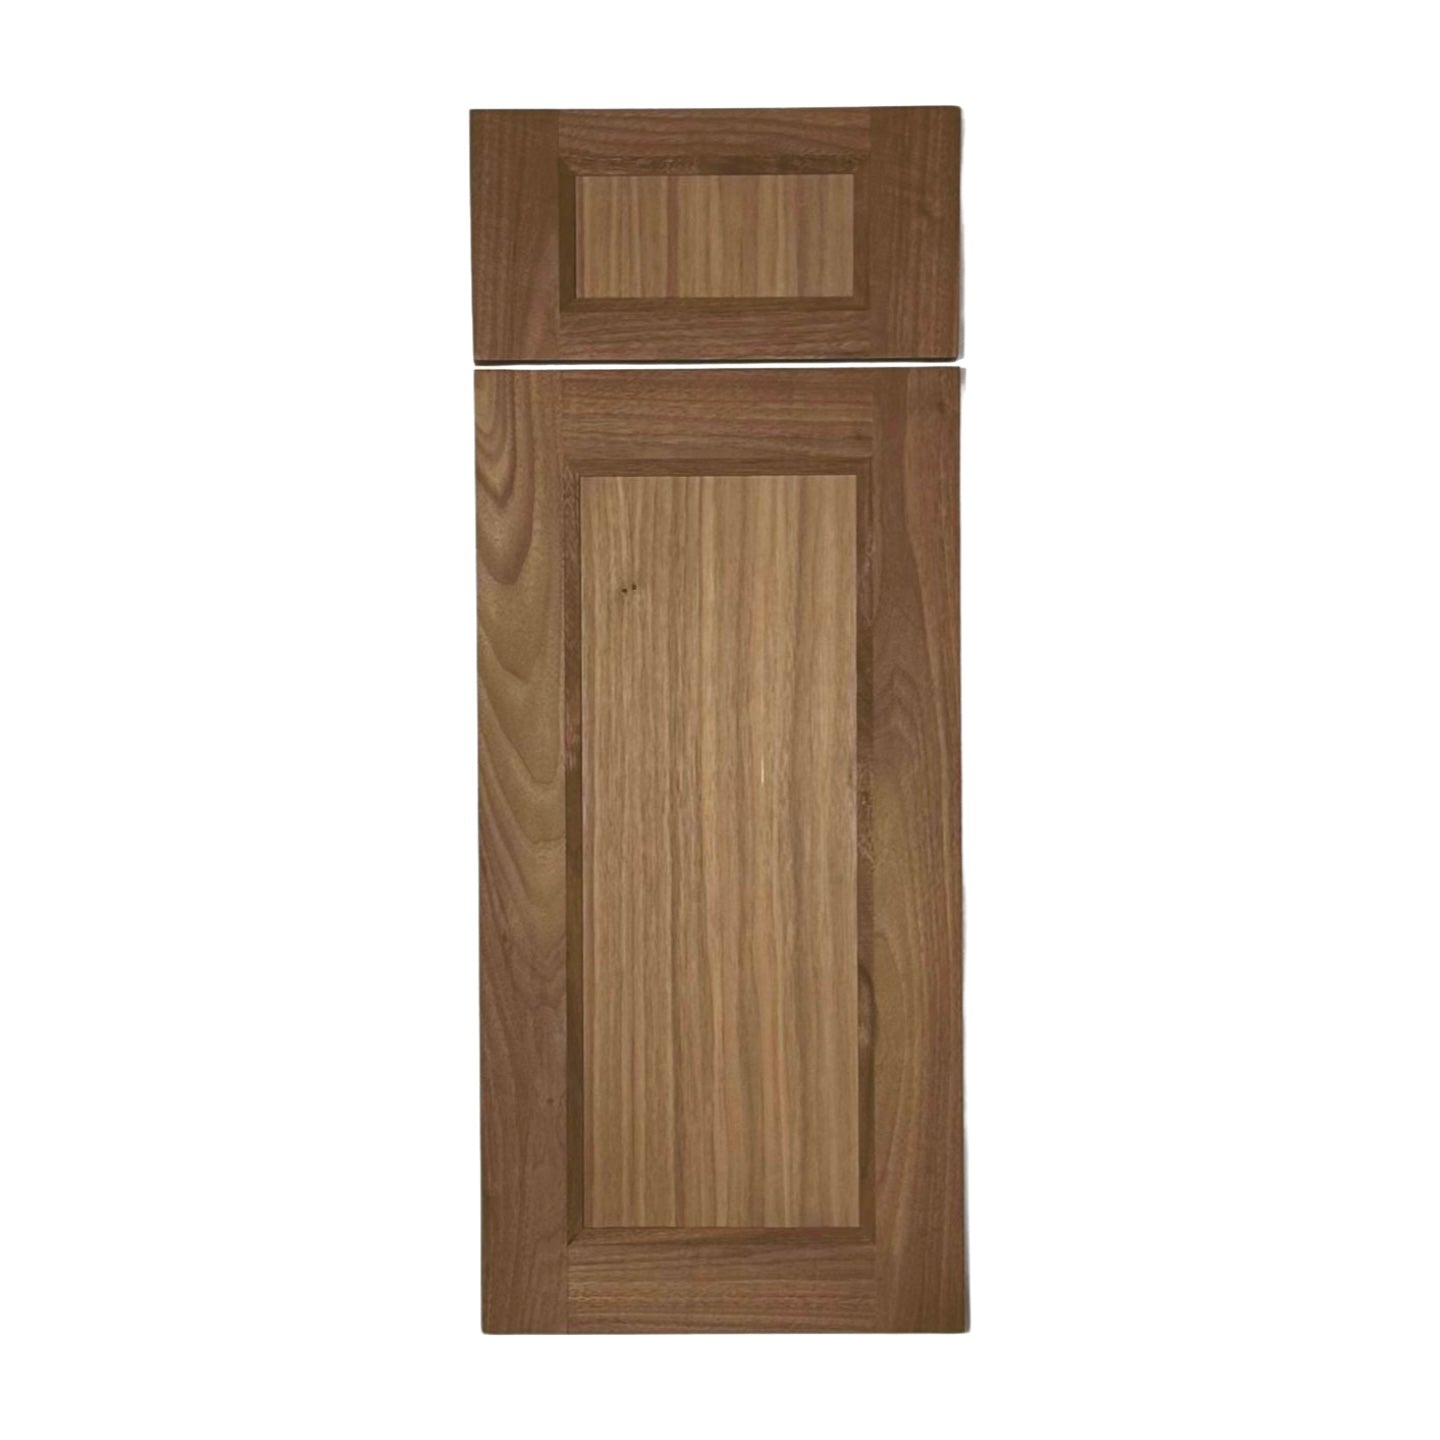 shaker cabinet drawer fronts and doors | the shaker door store